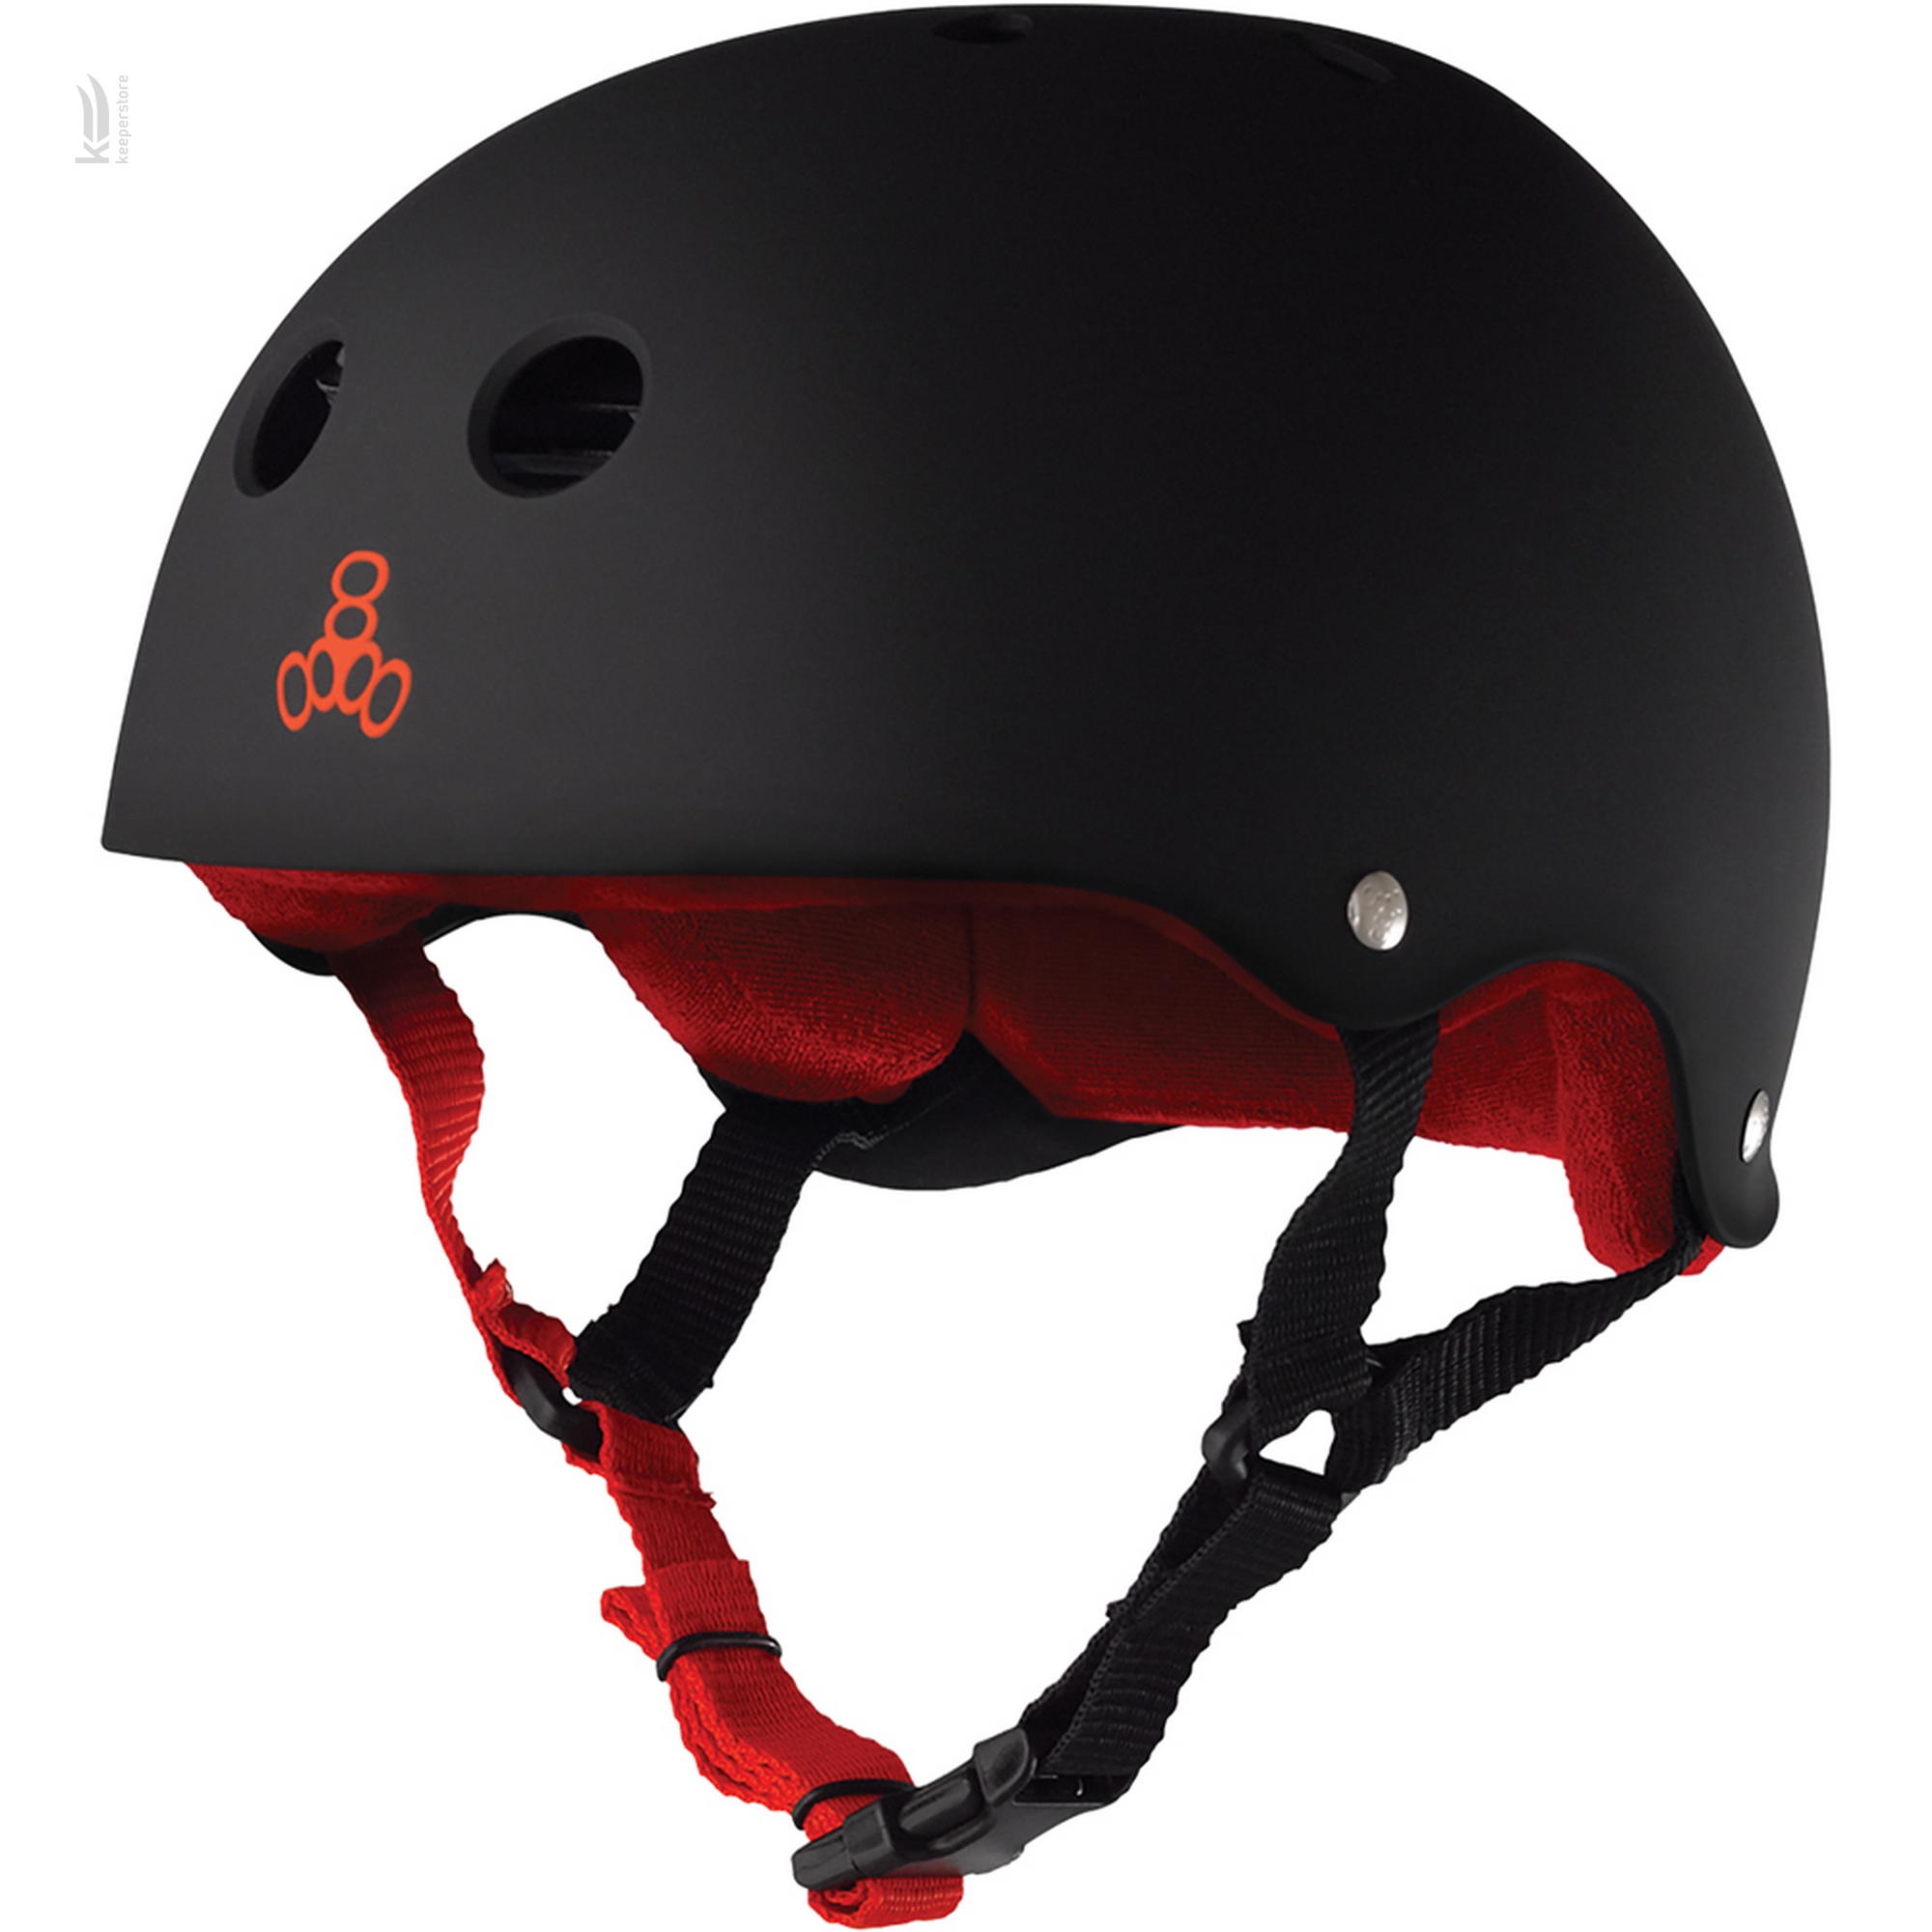 Детский шлем для скейтборда Triple8 Sweatsaver Helmet Black w/ Red (S)